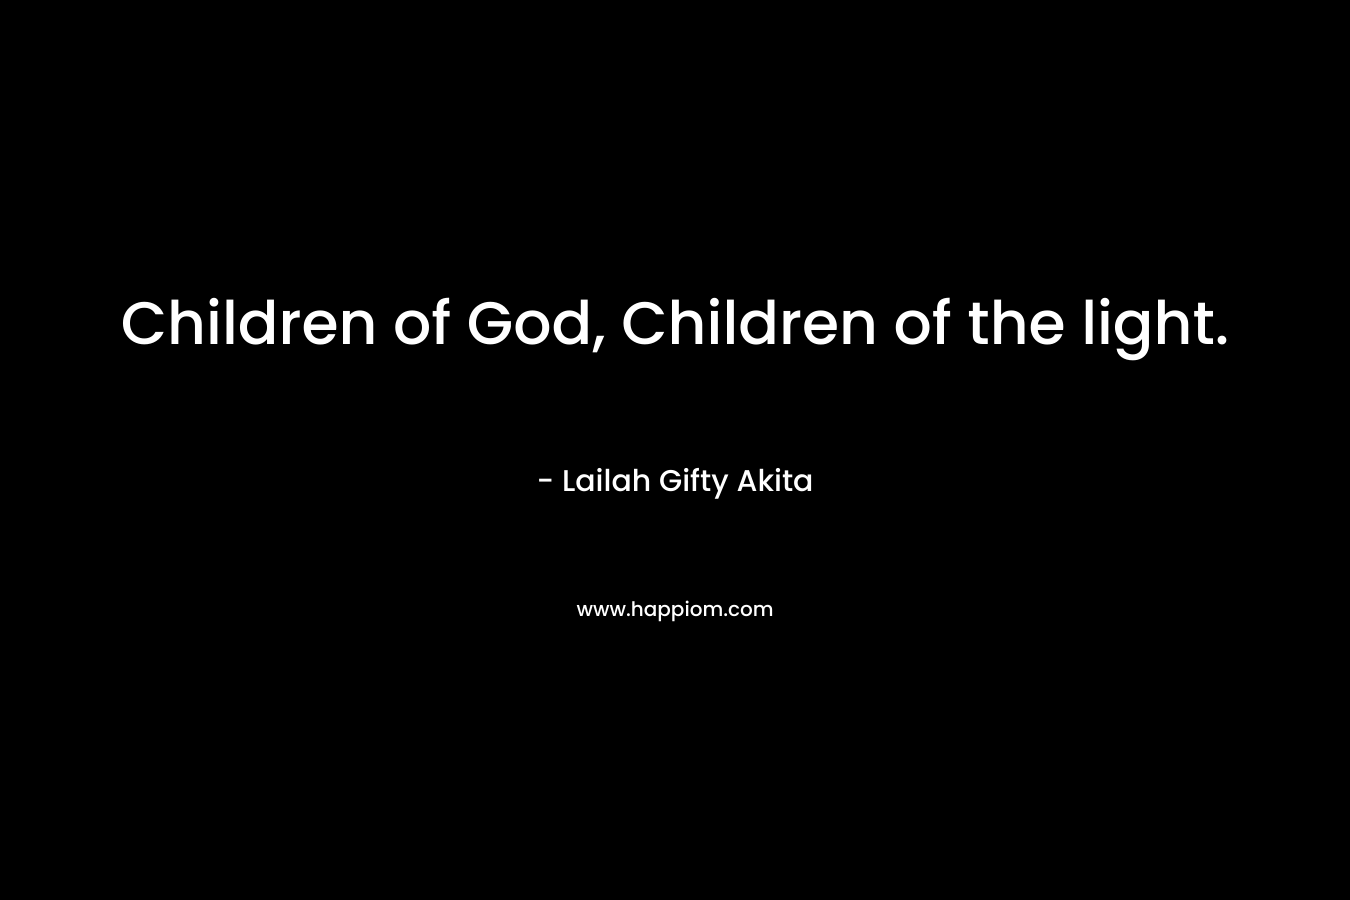 Children of God, Children of the light.